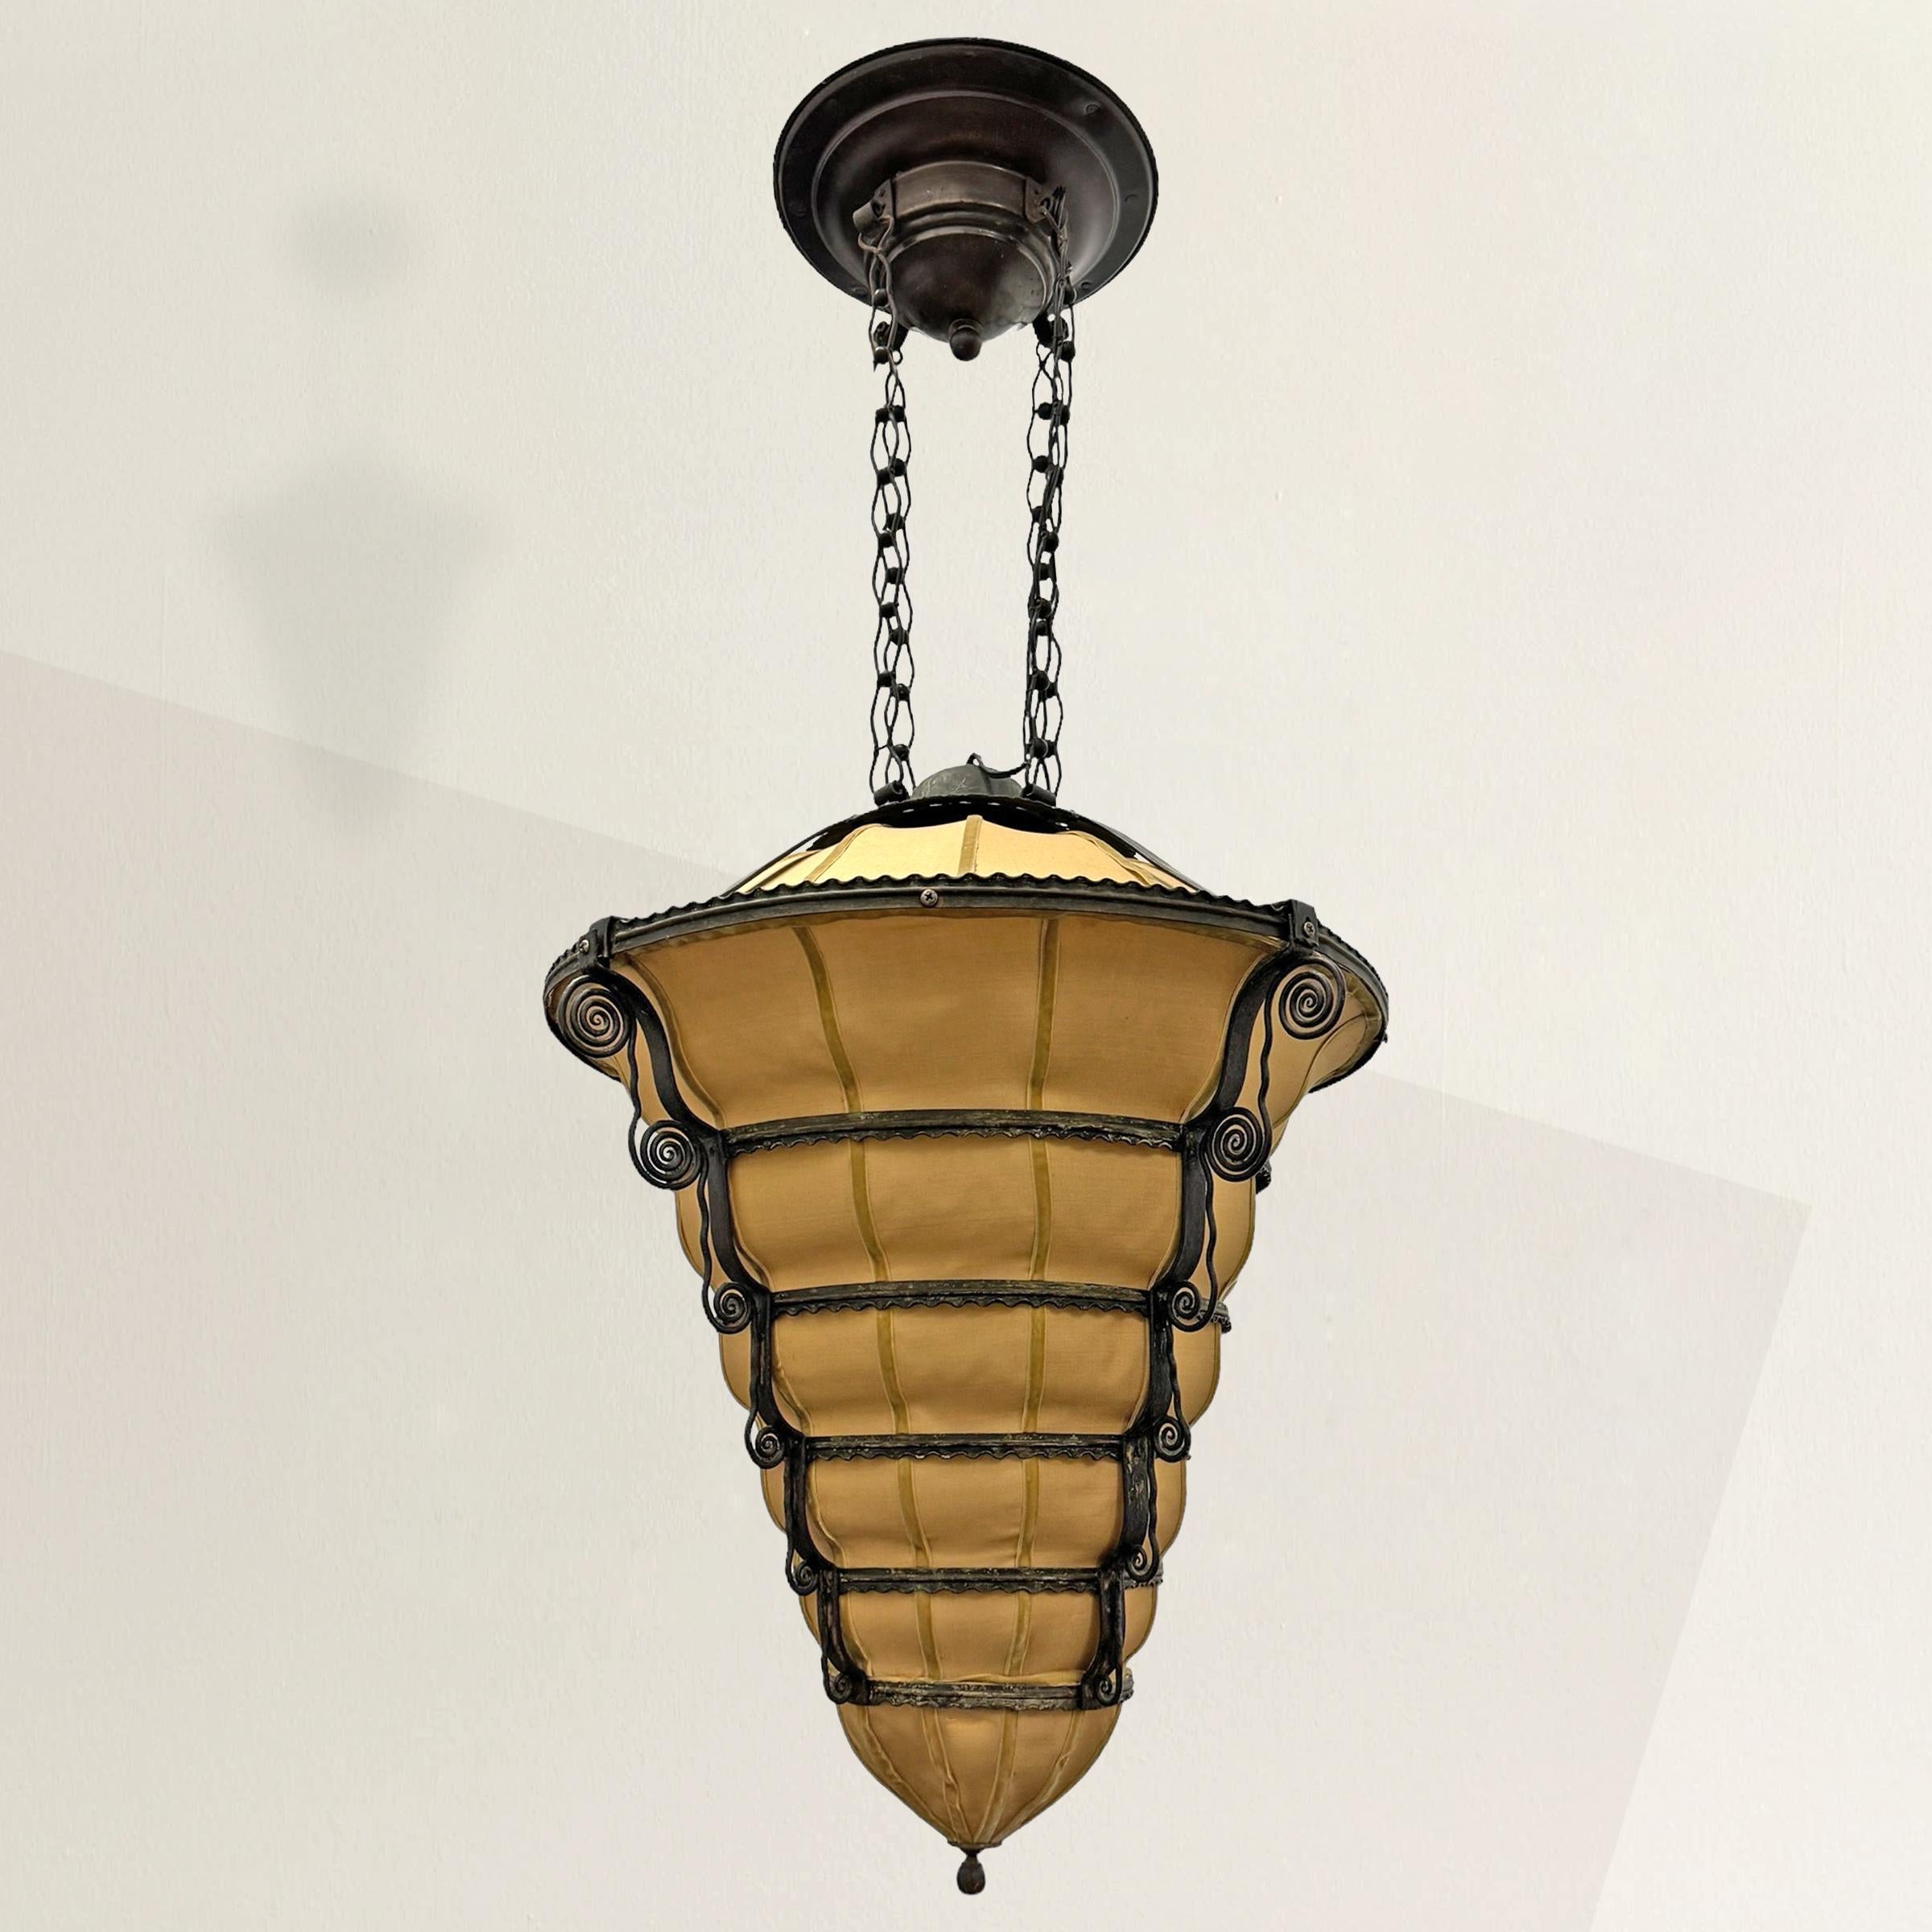 Ce superbe lustre Art déco français des années 1930 est un chef-d'œuvre de design. Il présente une remarquable forme de ruche en fer forgé, ornée d'élégants tourbillons de fer qui tombent en cascade le long de ses flancs. Sa silhouette saisissante